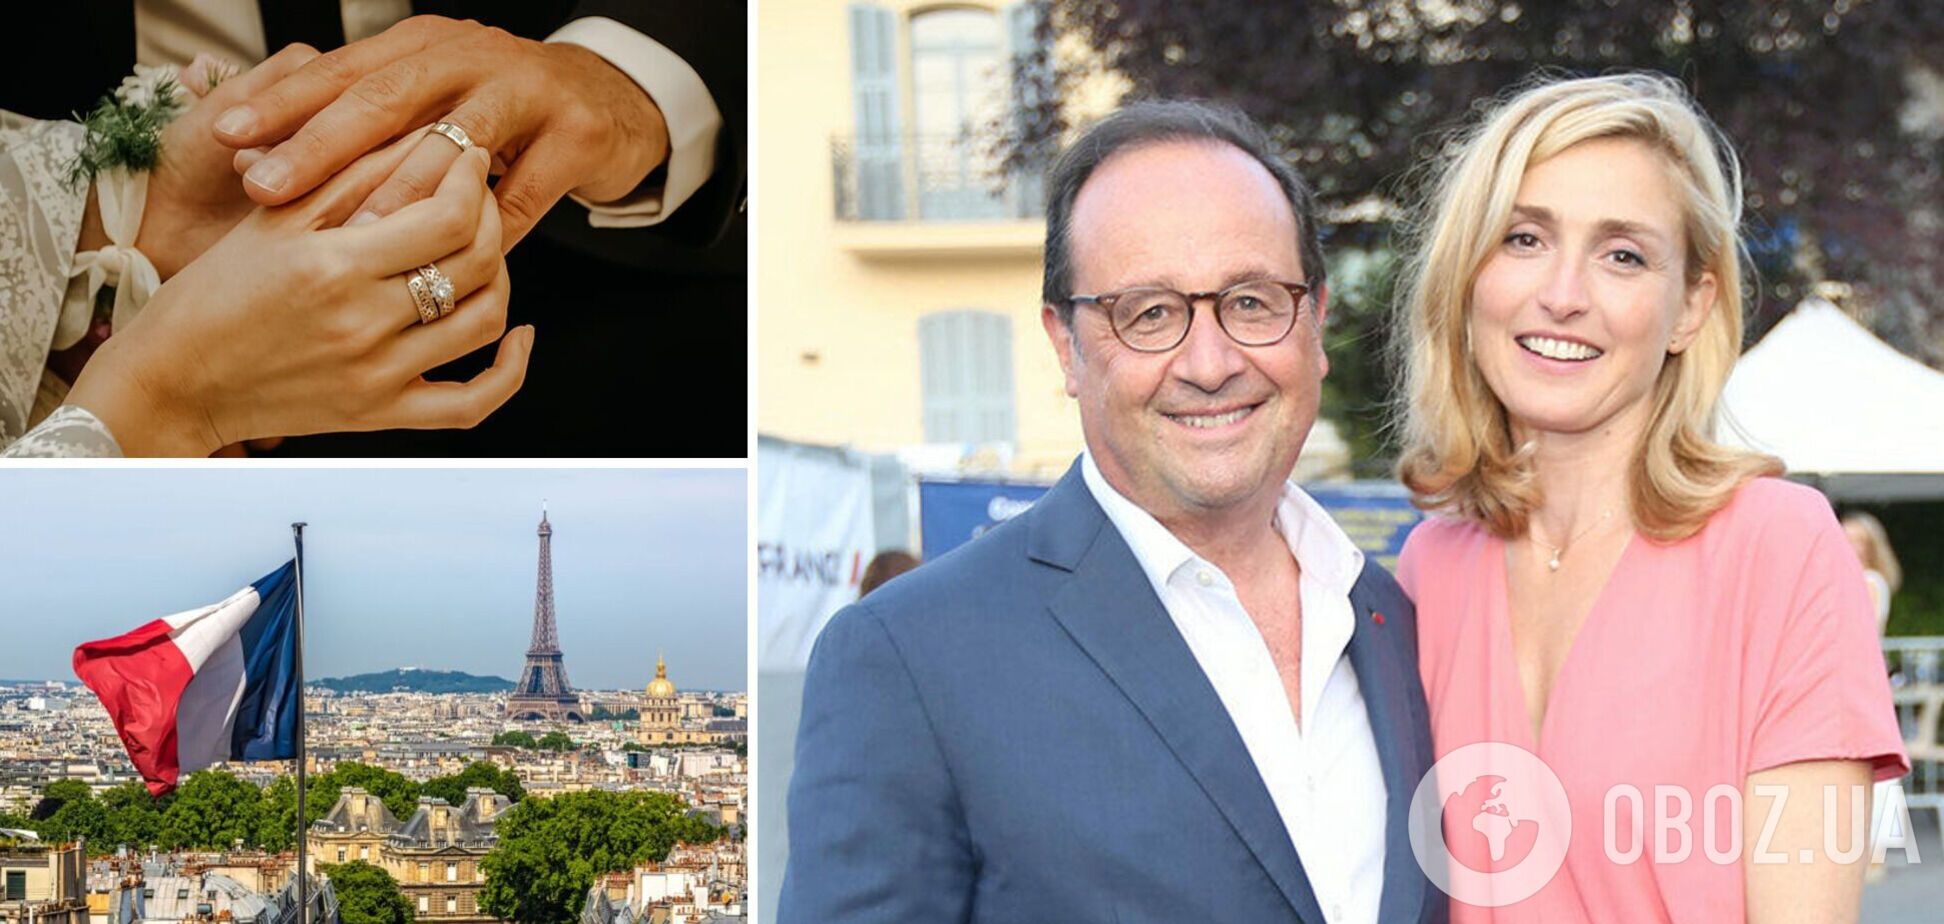 Бывший президент Франции Франсуа Олланд впервые женился в 67 лет. Как выглядит его избранница-актриса